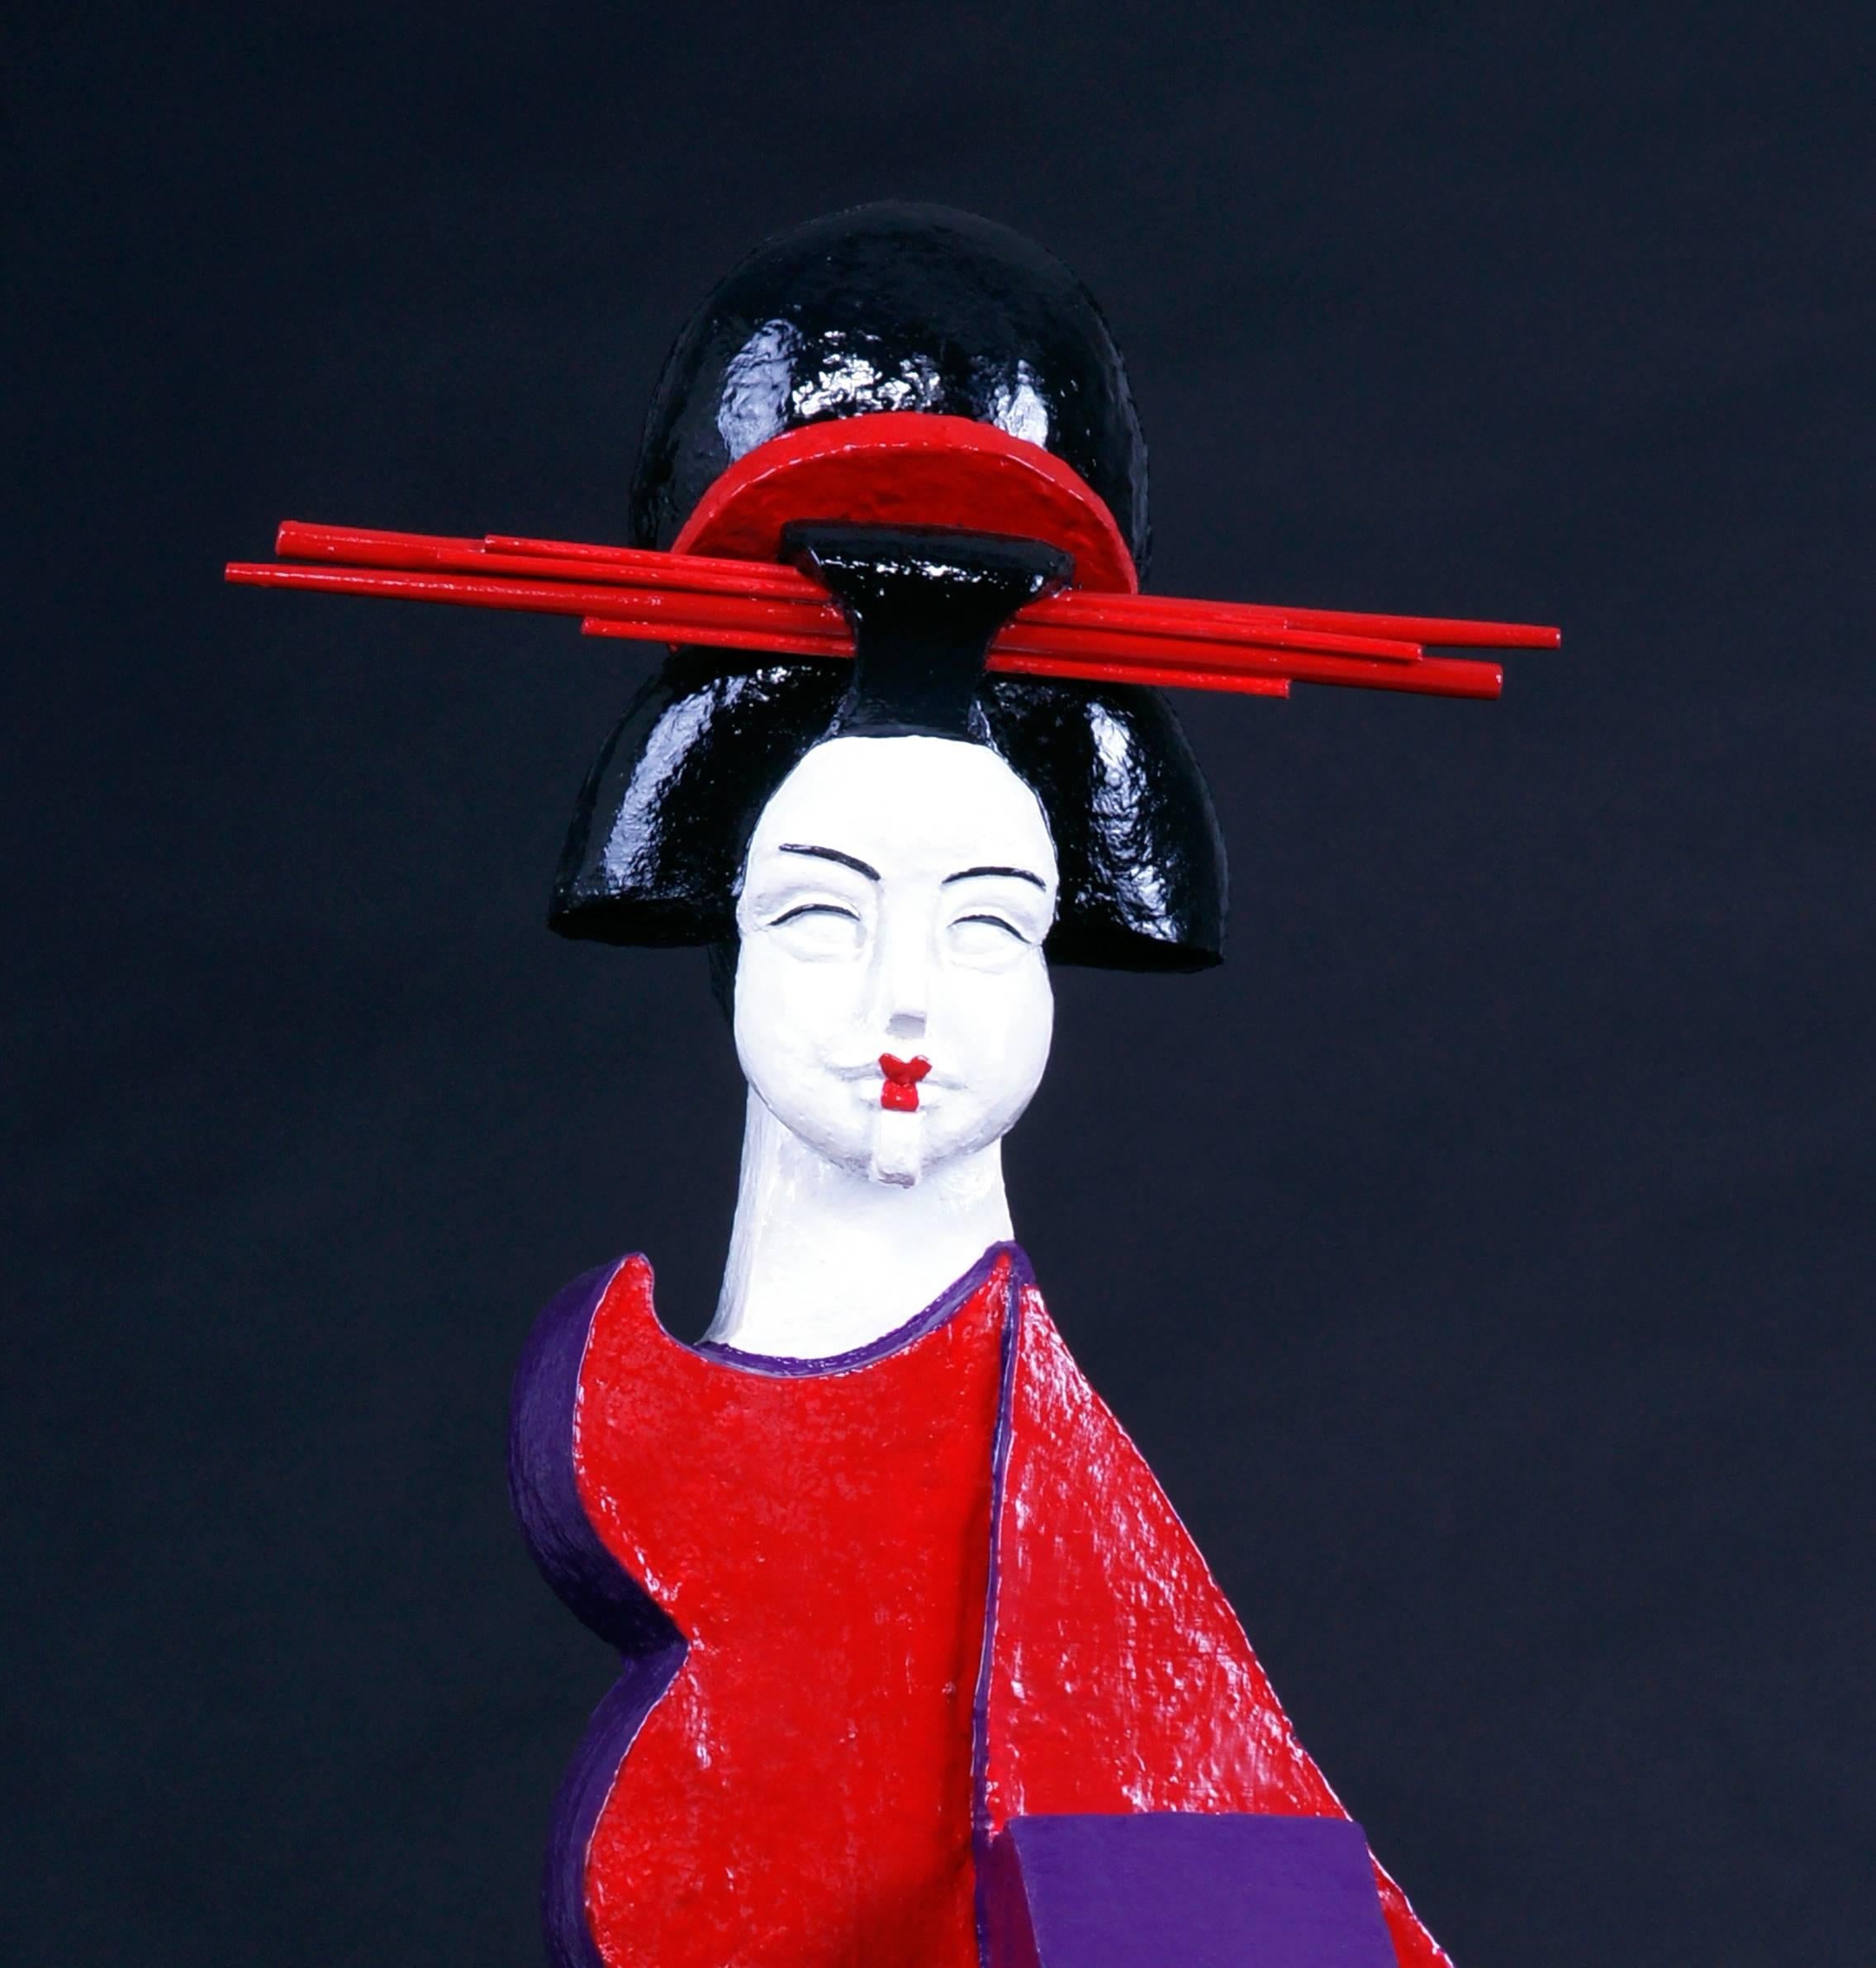 Marikos Gouvernante ist eine einzigartige zeitgenössische Sandsteinskulptur, die mit roter, violetter, schwarzer und weißer Emaille bemalt ist. Die Geisha-Kollektion der Künstlerin bringt die verschiedenen Gesichter der Weiblichkeit zum Ausdruck. 
